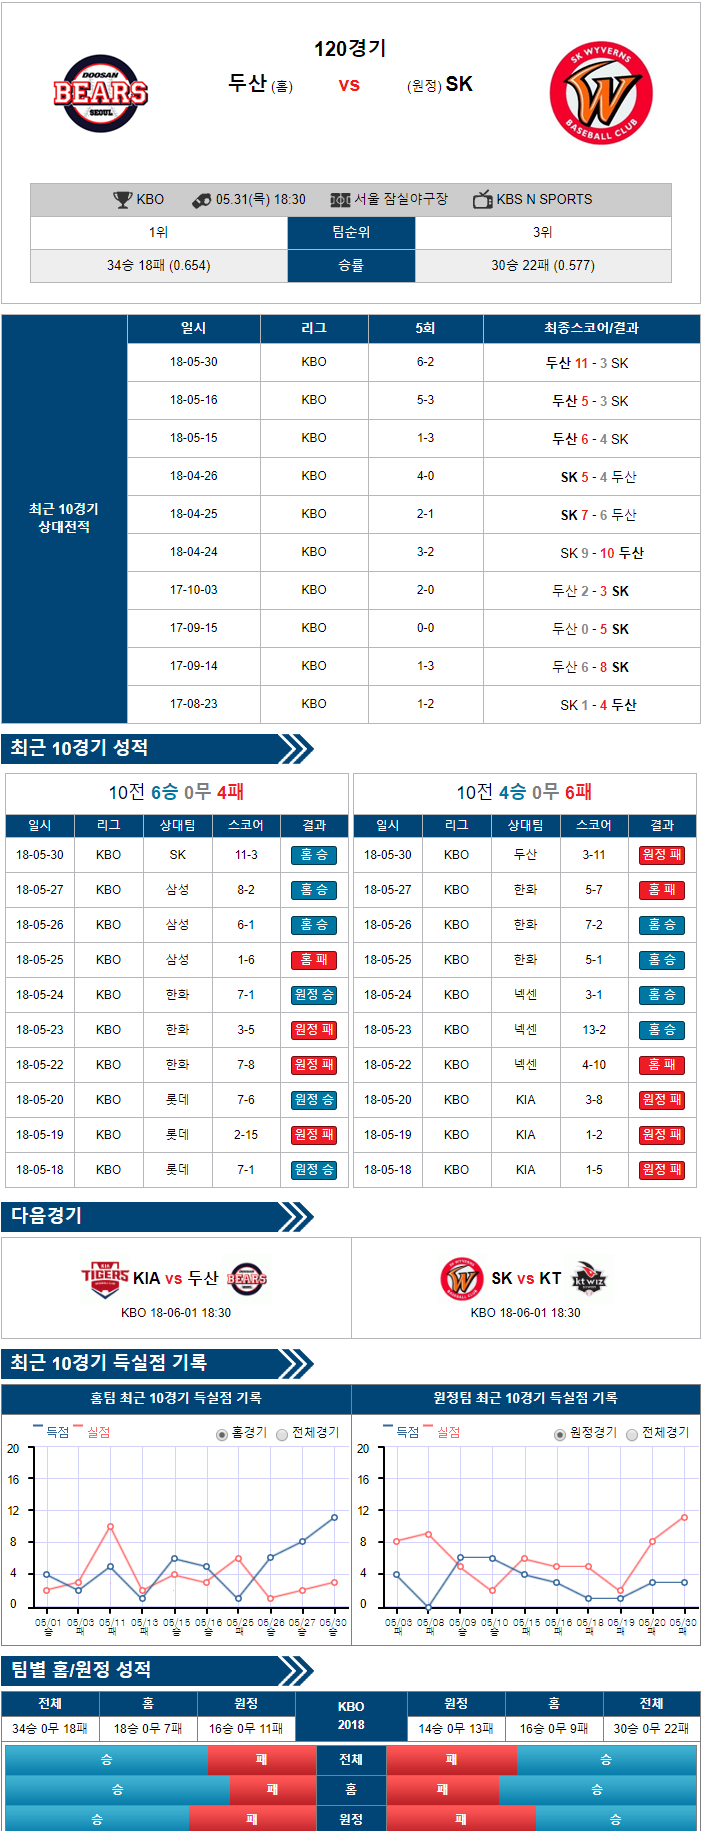 5-31 [KBO] 18:30 야구분석 두산 vs SK